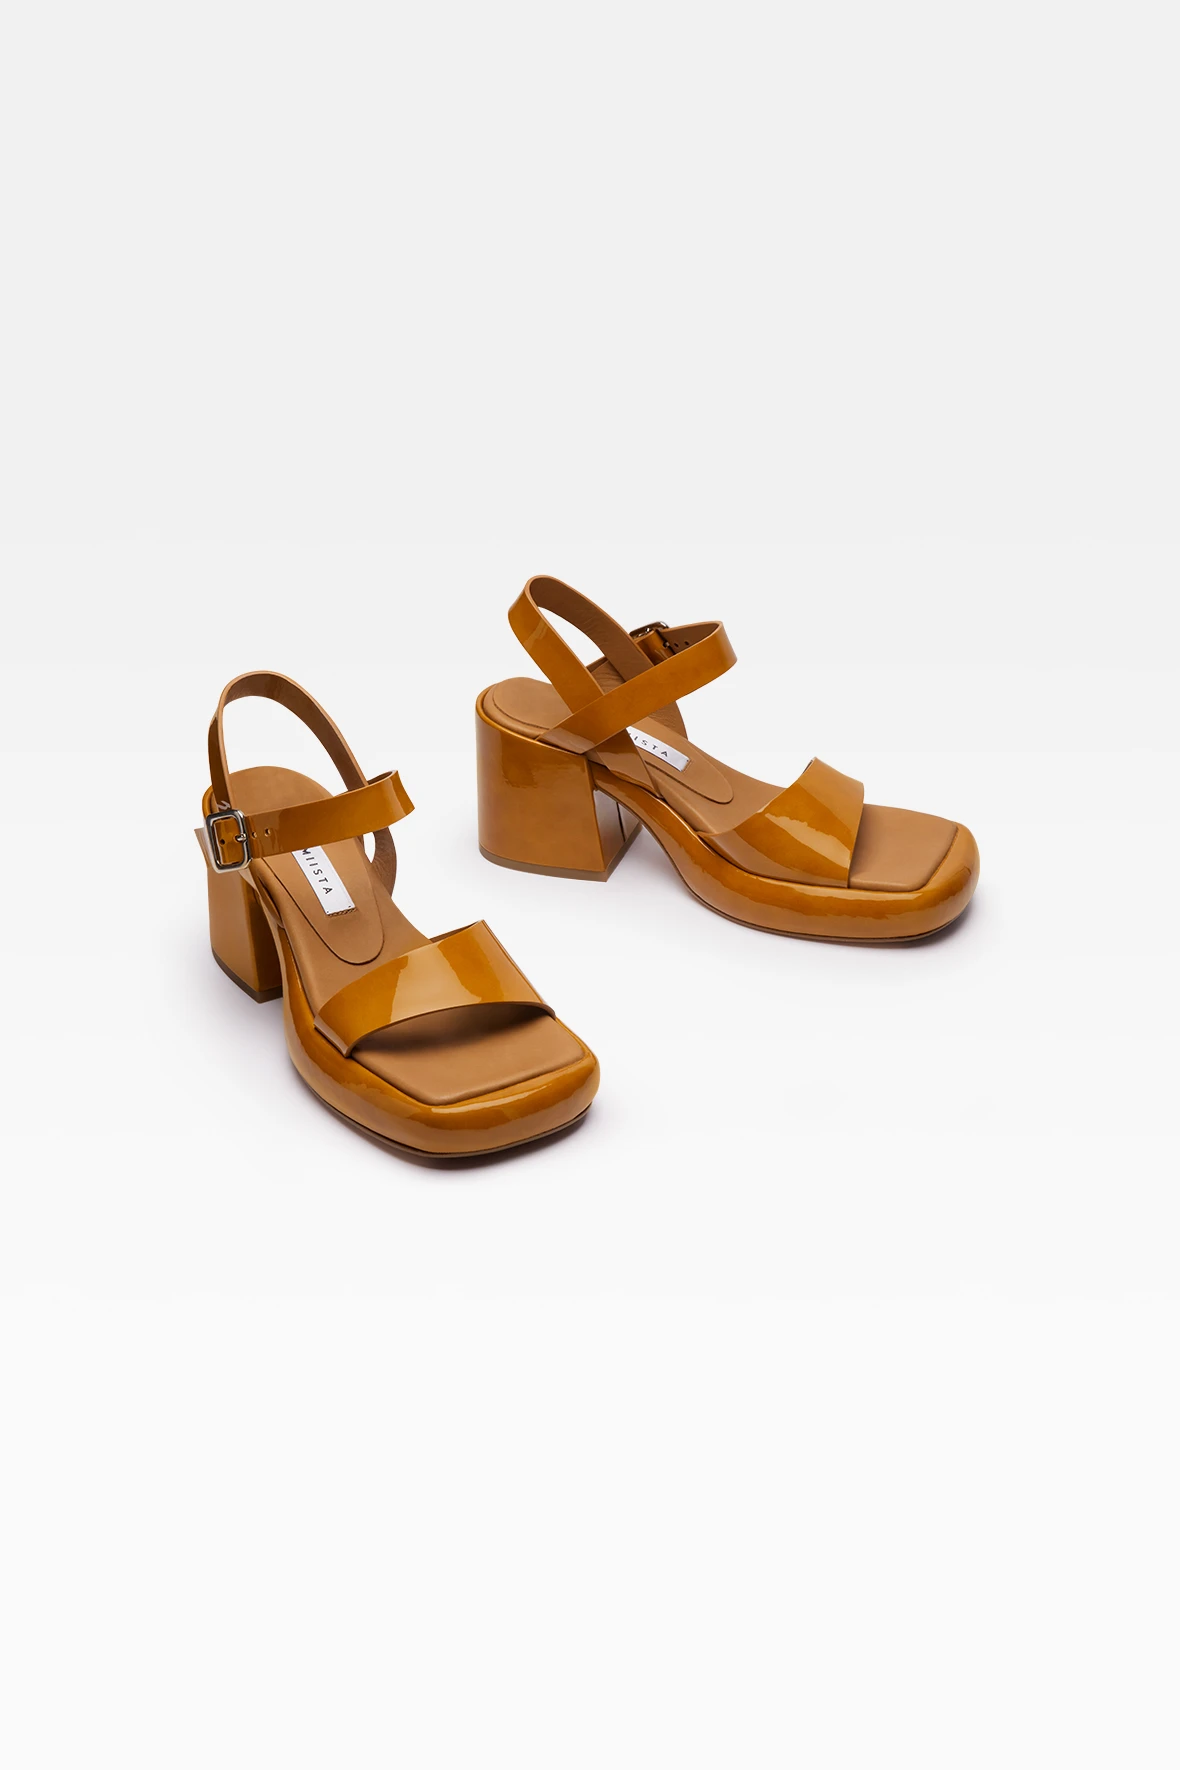 miista-beverly-camel-sandals-2